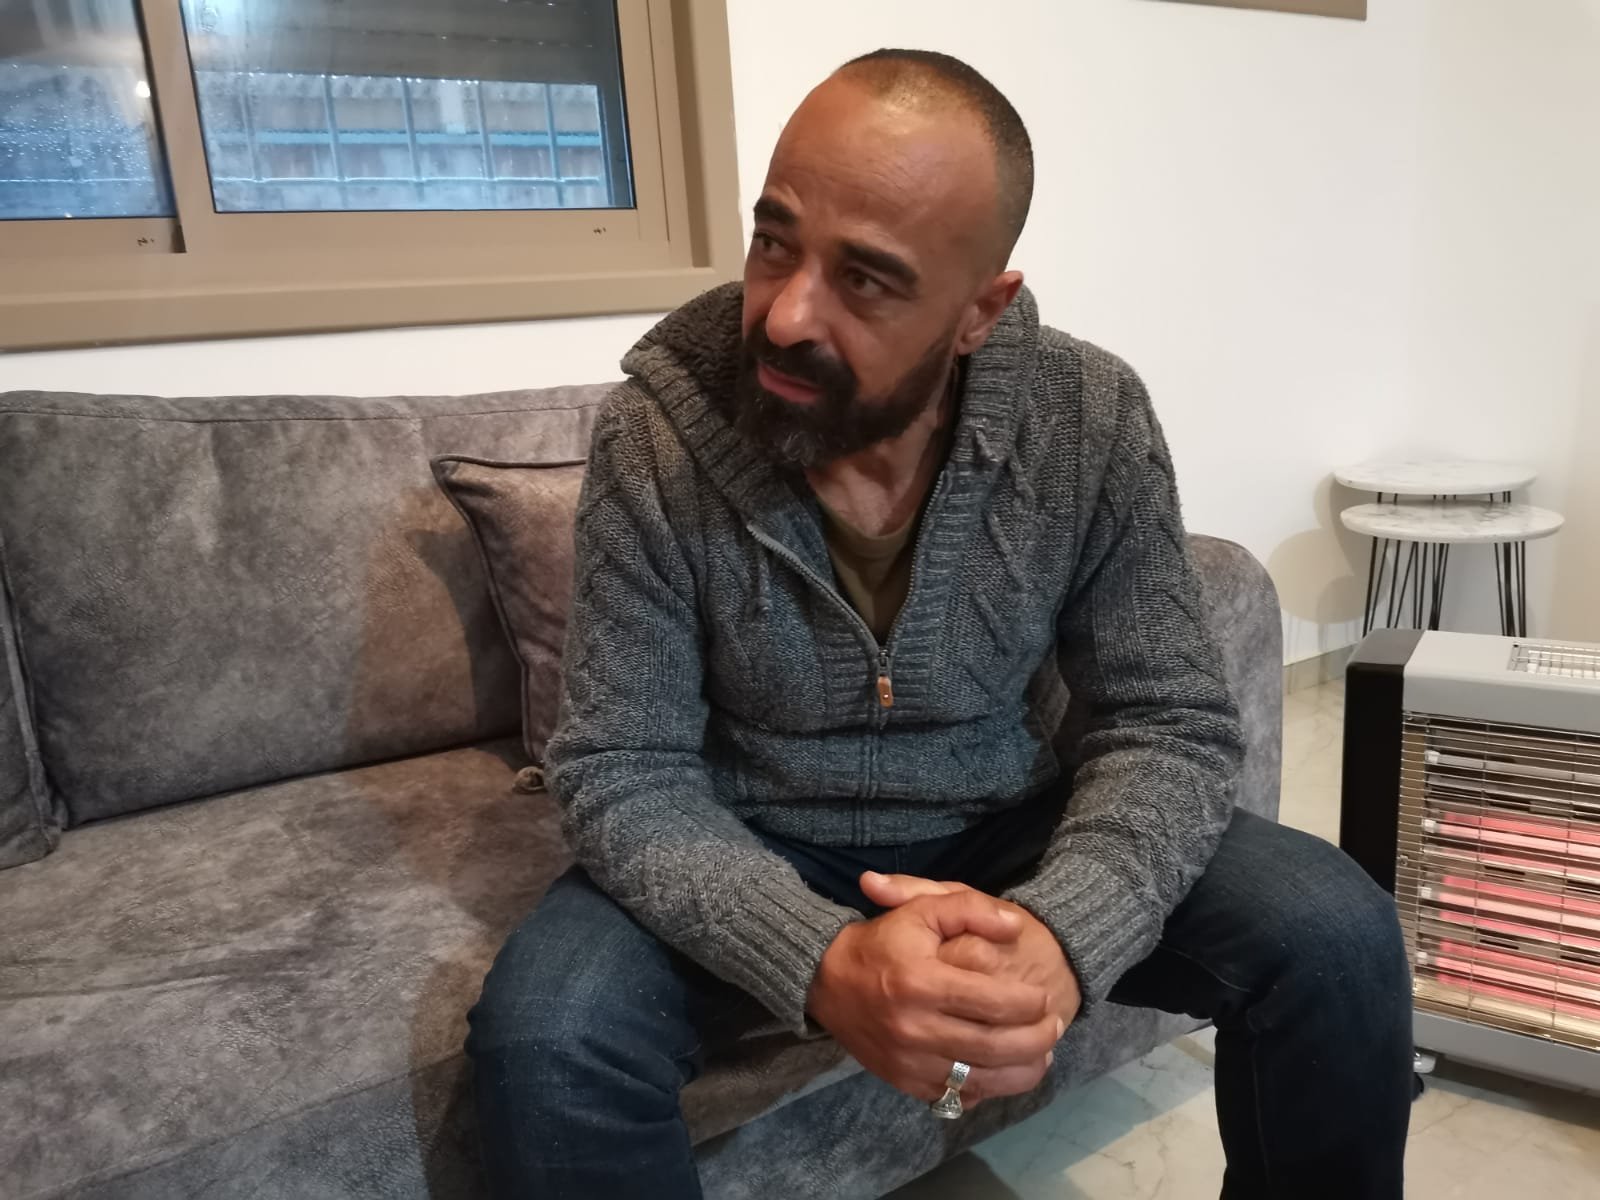 محمود صالحية لـ "بكرا": قتلوا حلمي واخذوا حياتي عندما هدموا منزلي-0